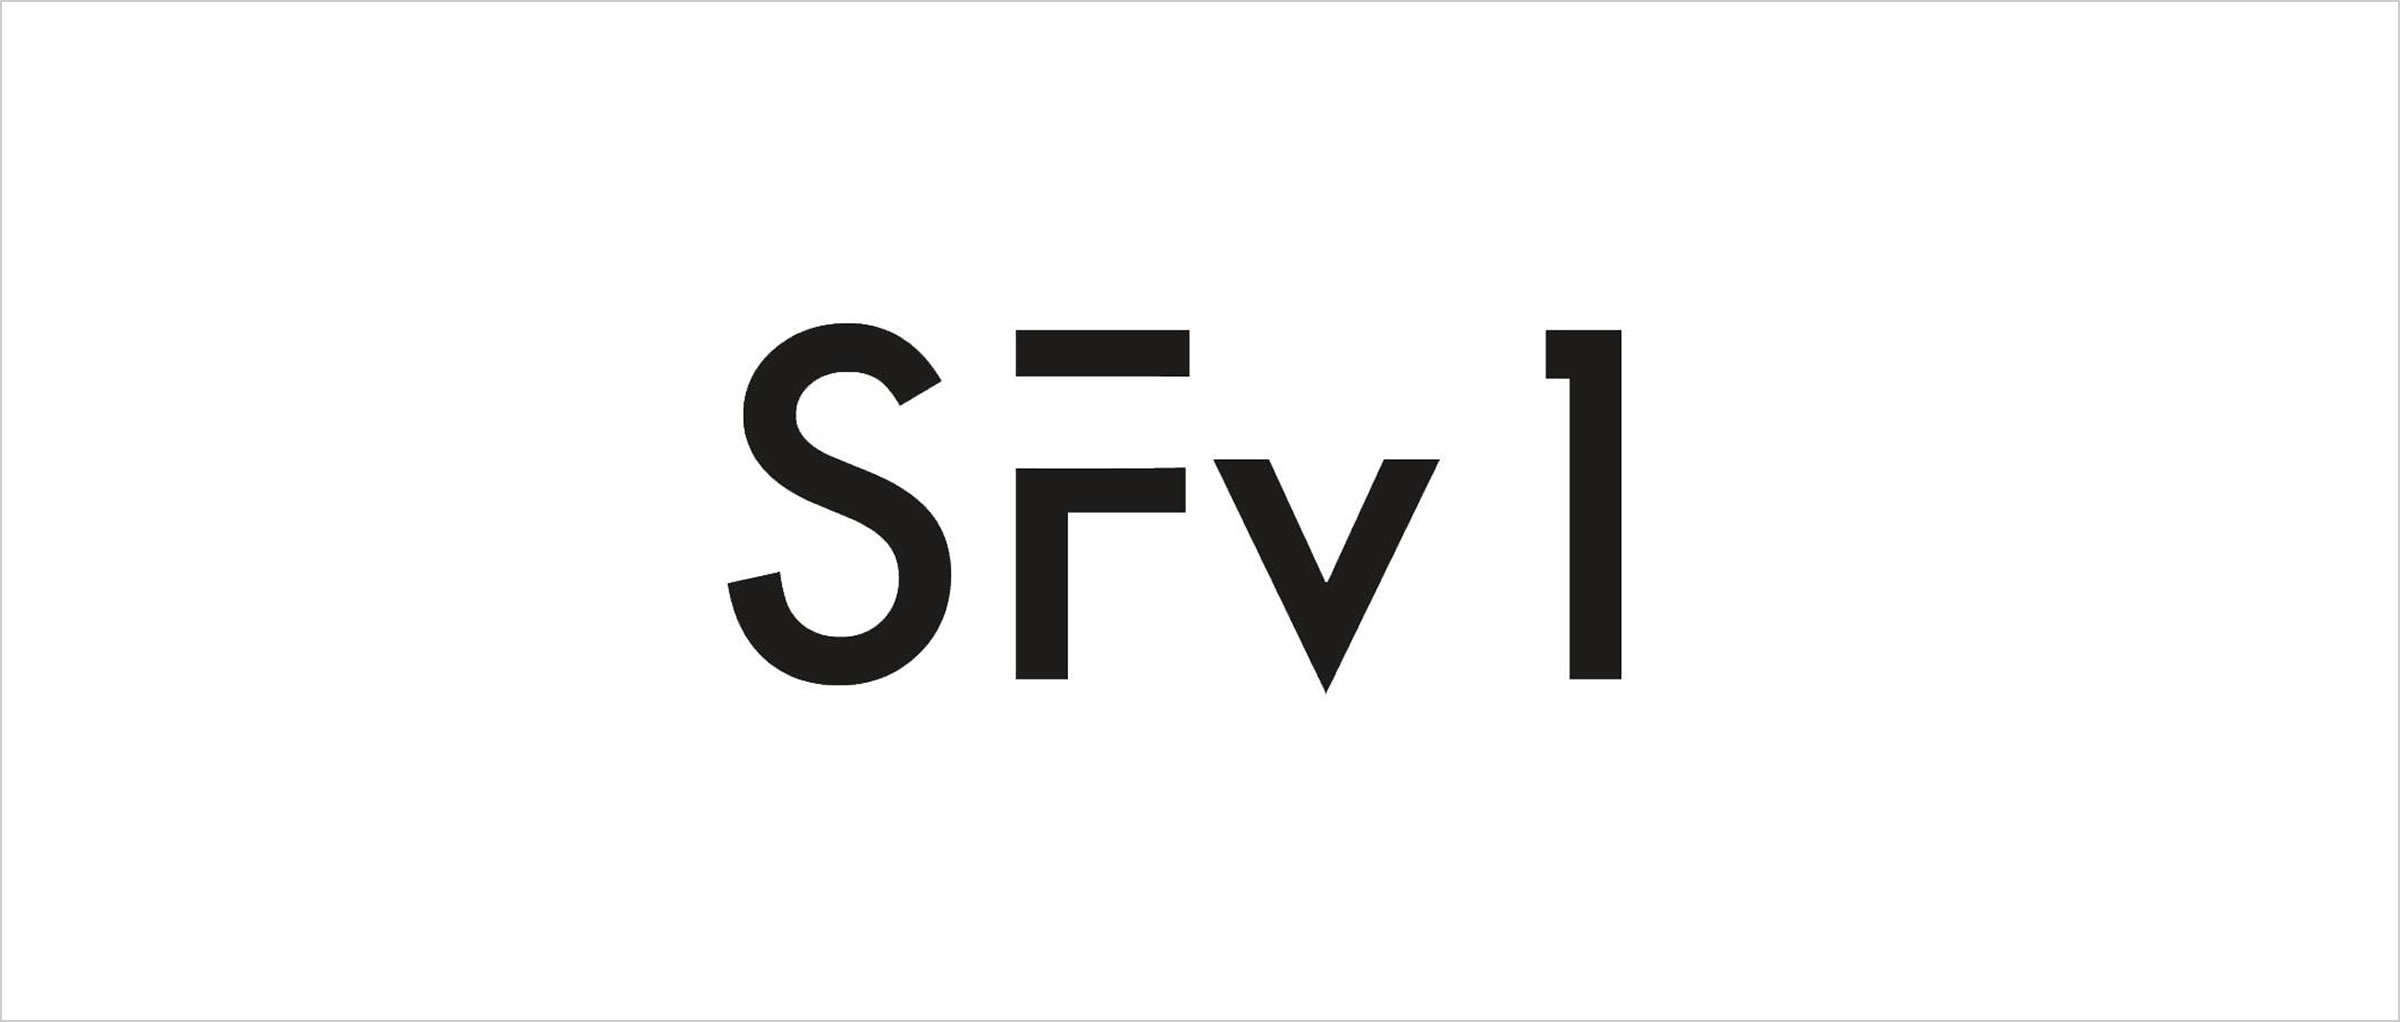 SFv1 – feature film